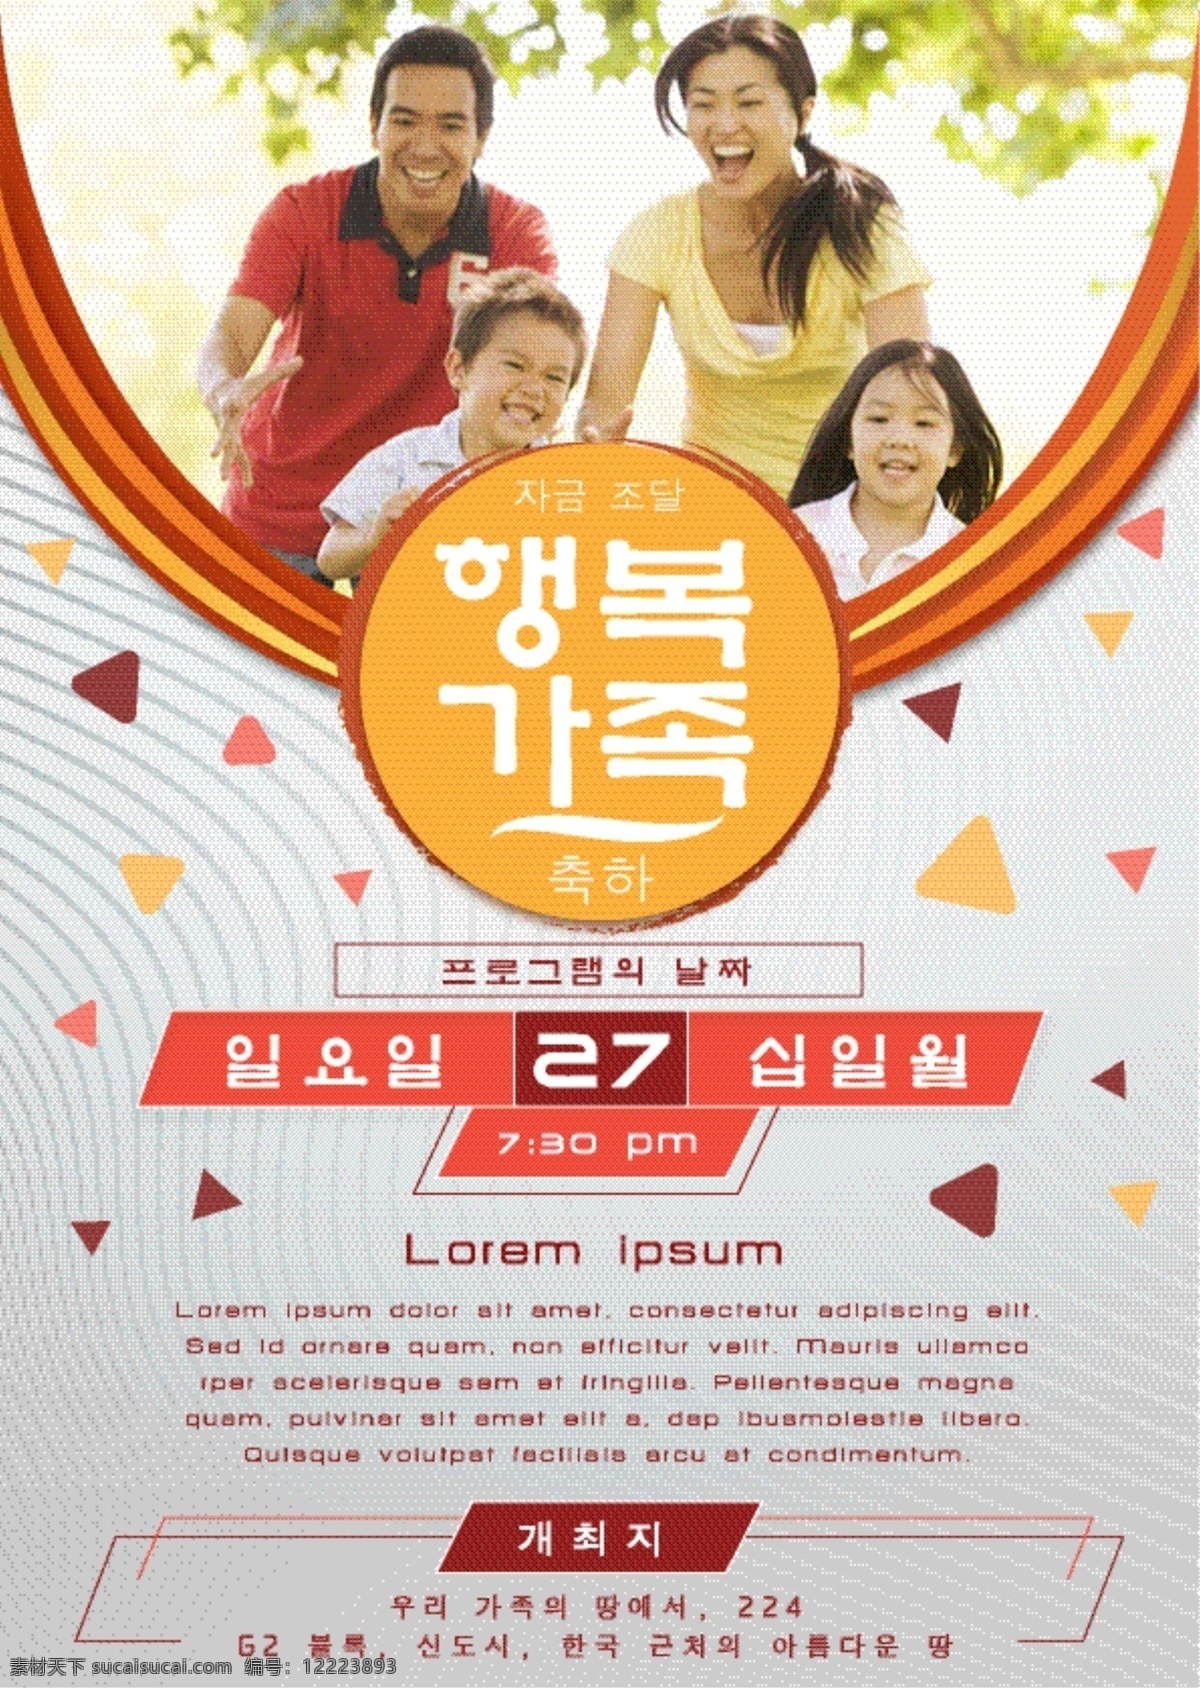 韩国 家庭 a4 图像 水 哈哈哈哈哈哈 雪 多用途 营销 旗帜 向量 商业 插画 冰 事件 这篇论文 模板 蓝色 海报 快乐 飞机的飞行员 旅行 体育 国王